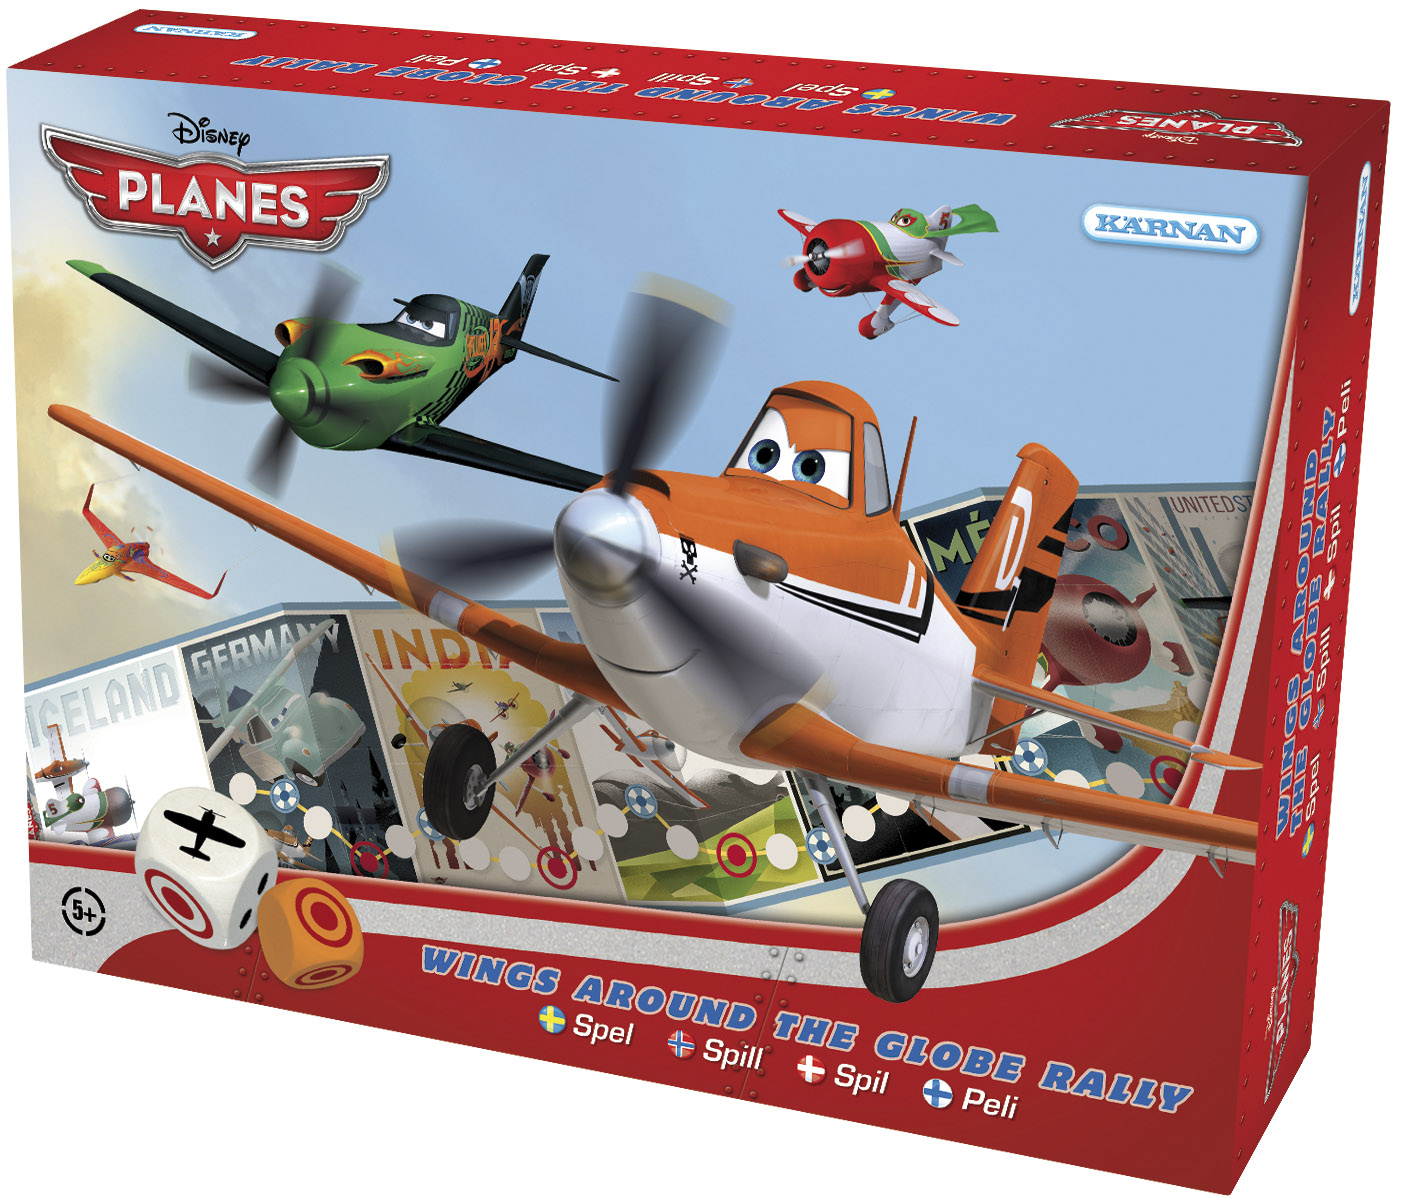 Hver spiller repræsenterer et af de fly, der optræder i filmen Planes.